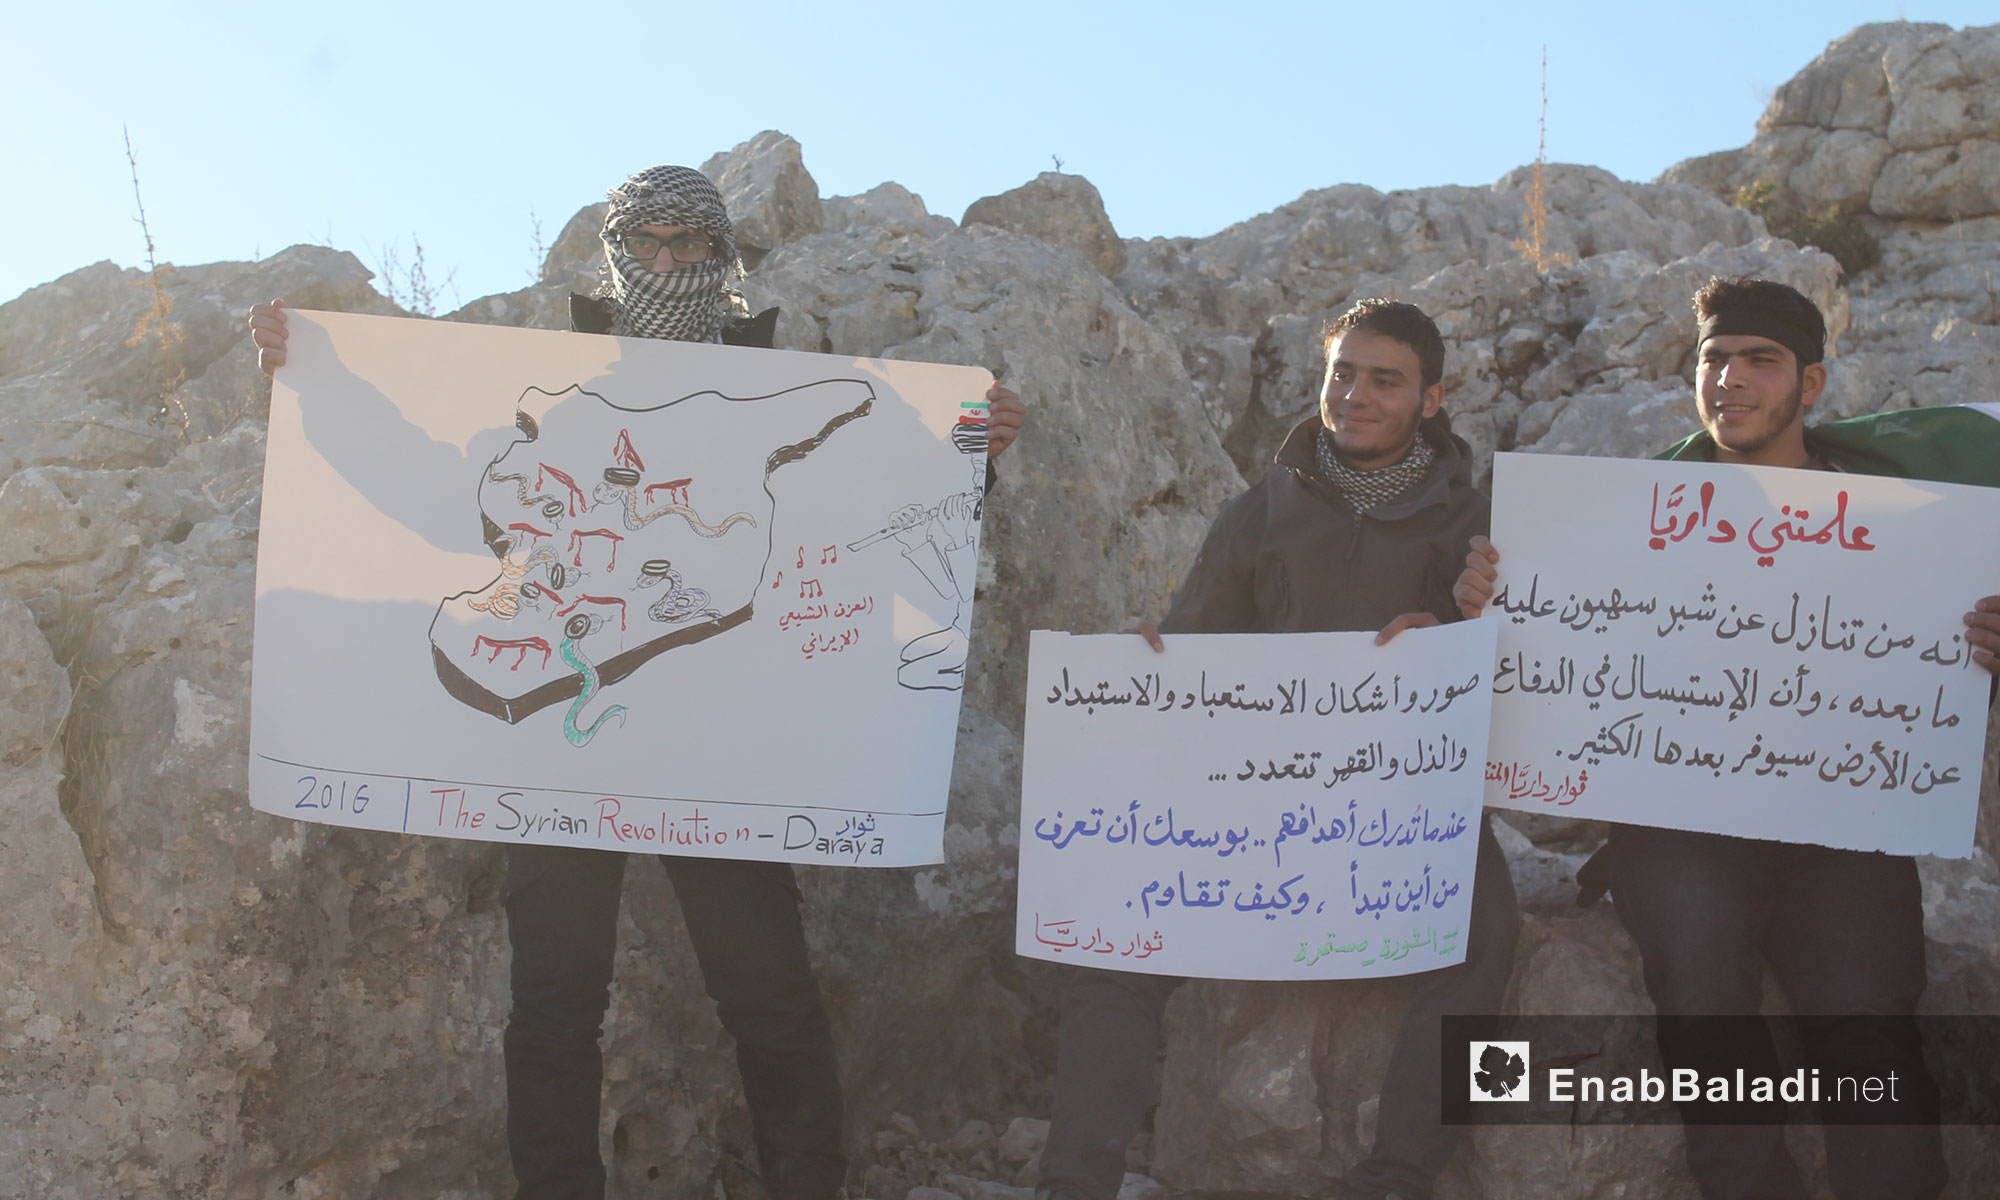 ثوار داريا من ادلب في وقفة تضامنية مع الغوطة الشرقية - 9 كانون الأول 2016 (عنب بلدي) 